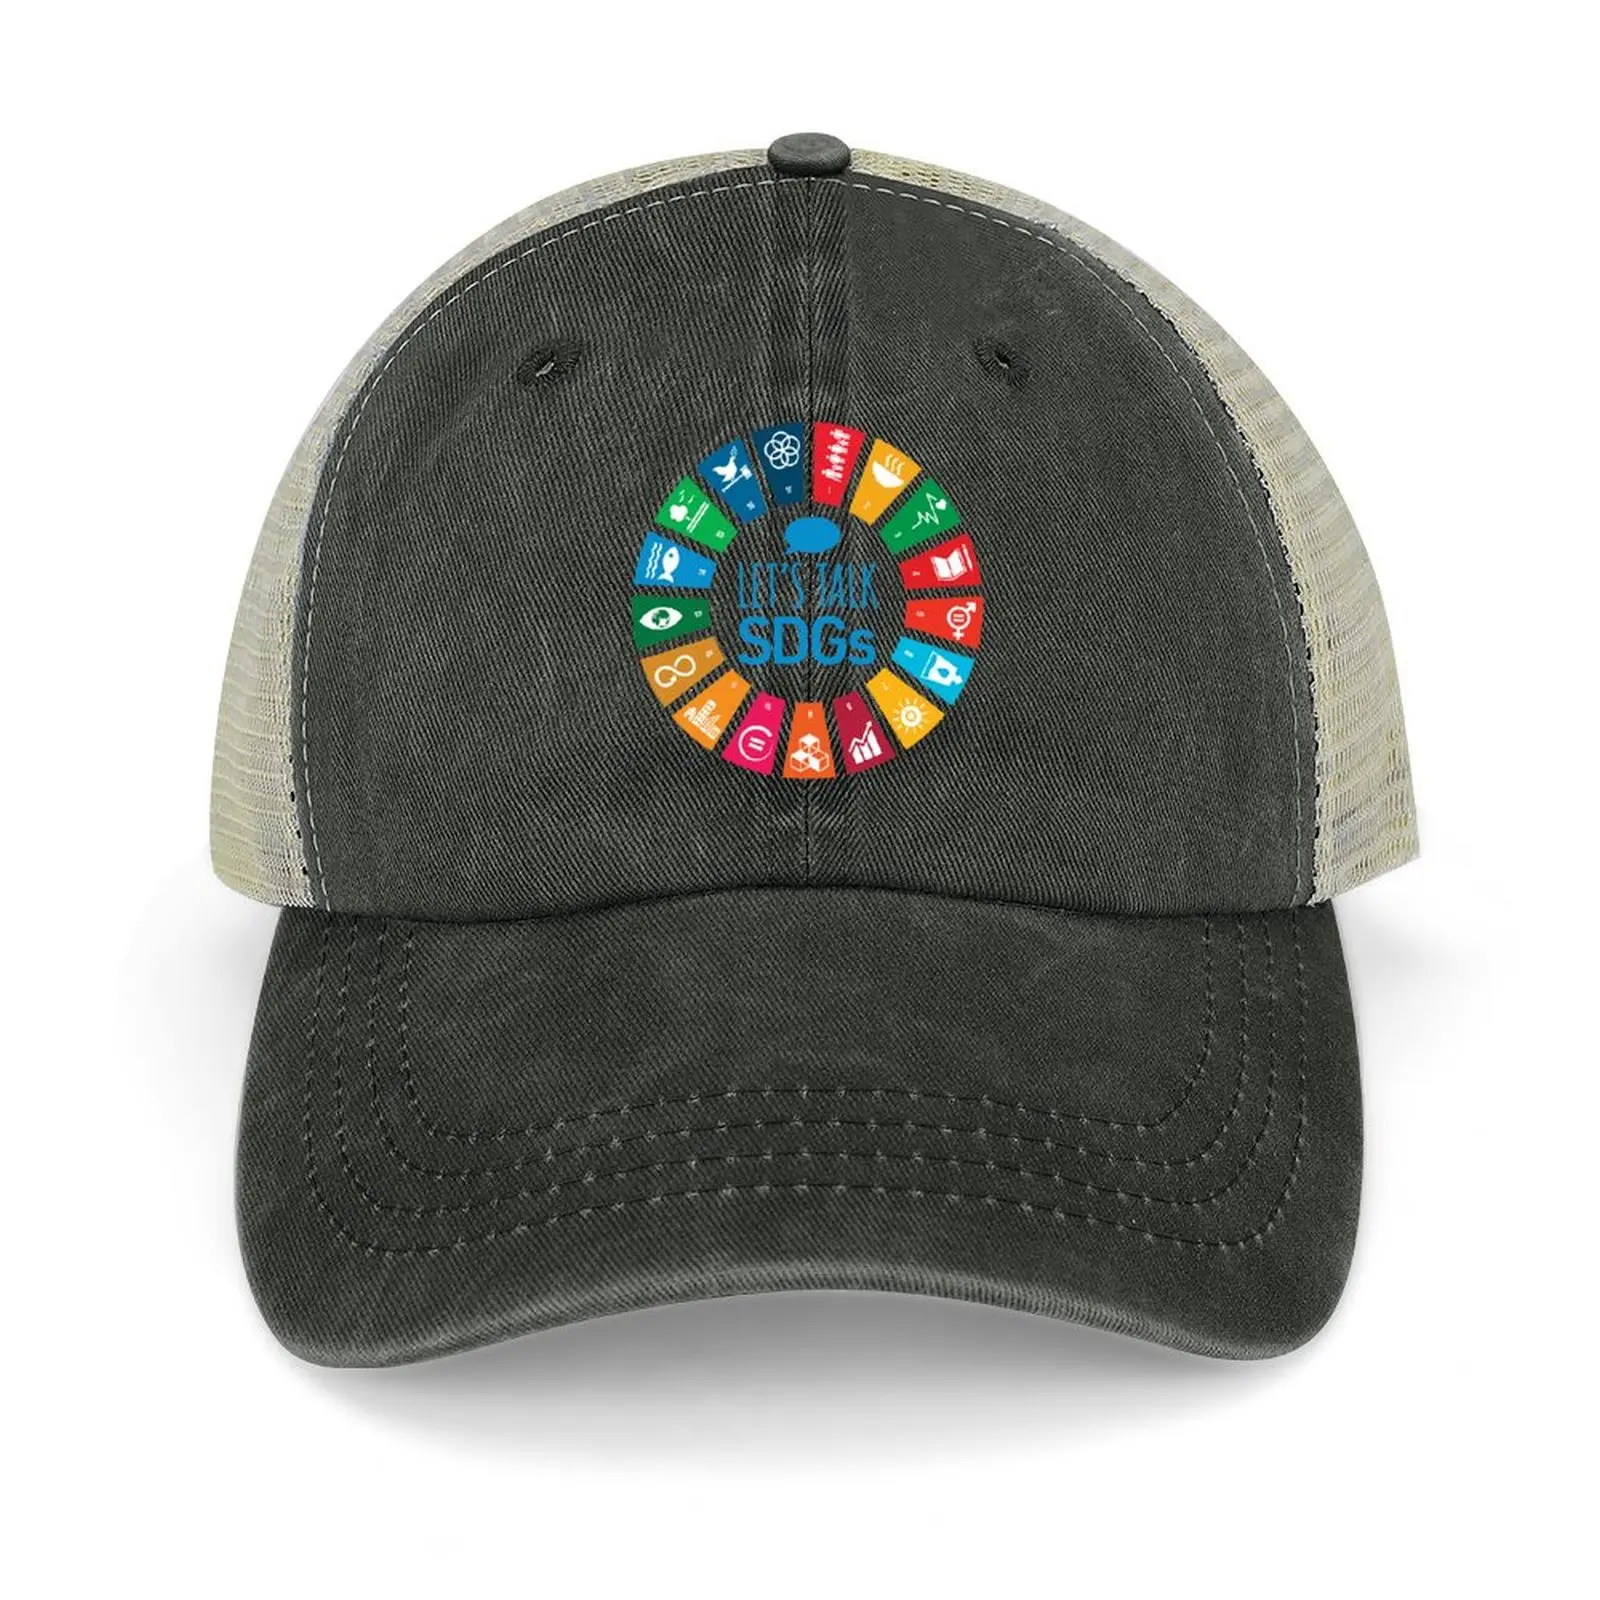 

Let's Talk SDGs UN Global Goals Logo United Nations Sustainable Development Goals 2030 Cowboy Hat